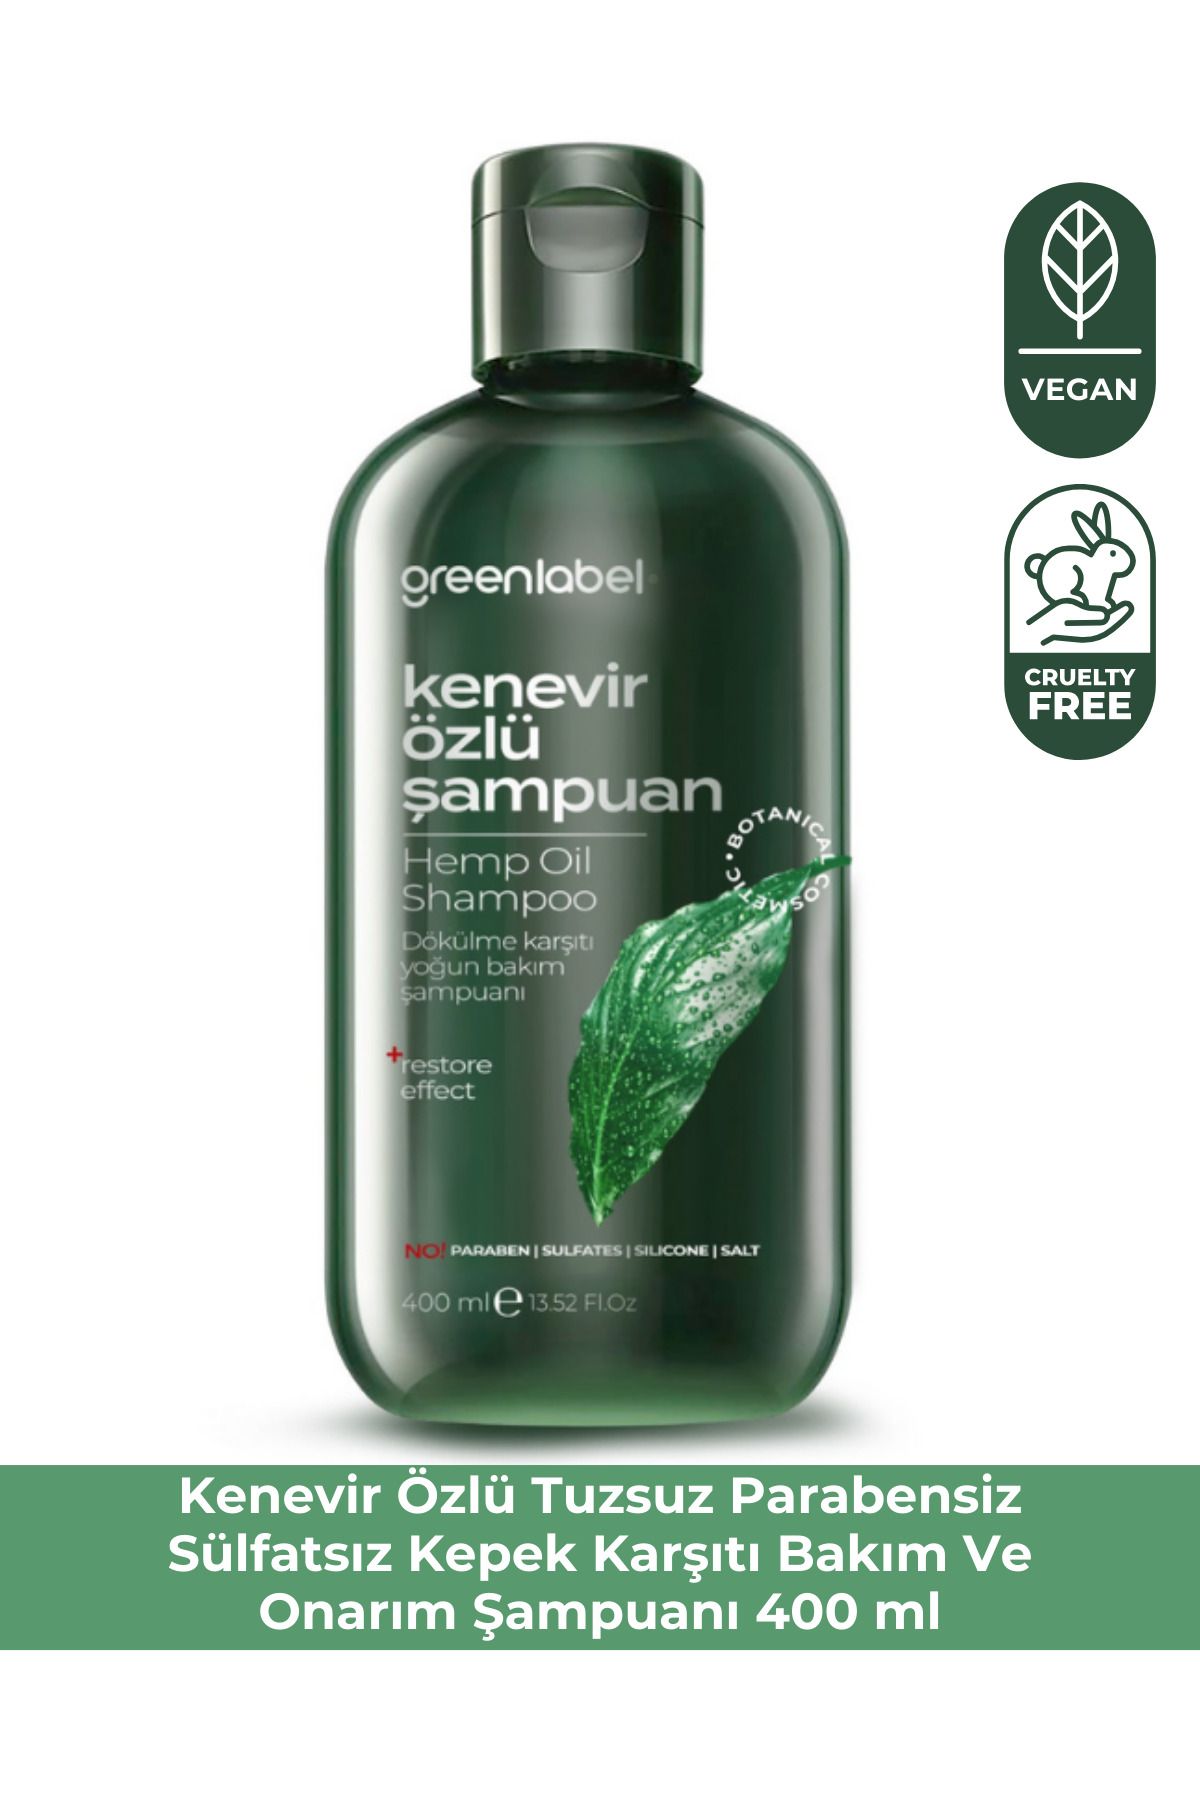 Green Label Greenlabel Kenevir Özlü Tuzsuz Parabensiz Sülfatsız Kepek Karşıtı Bakım Ve Onarım Şampuanı 400ml.